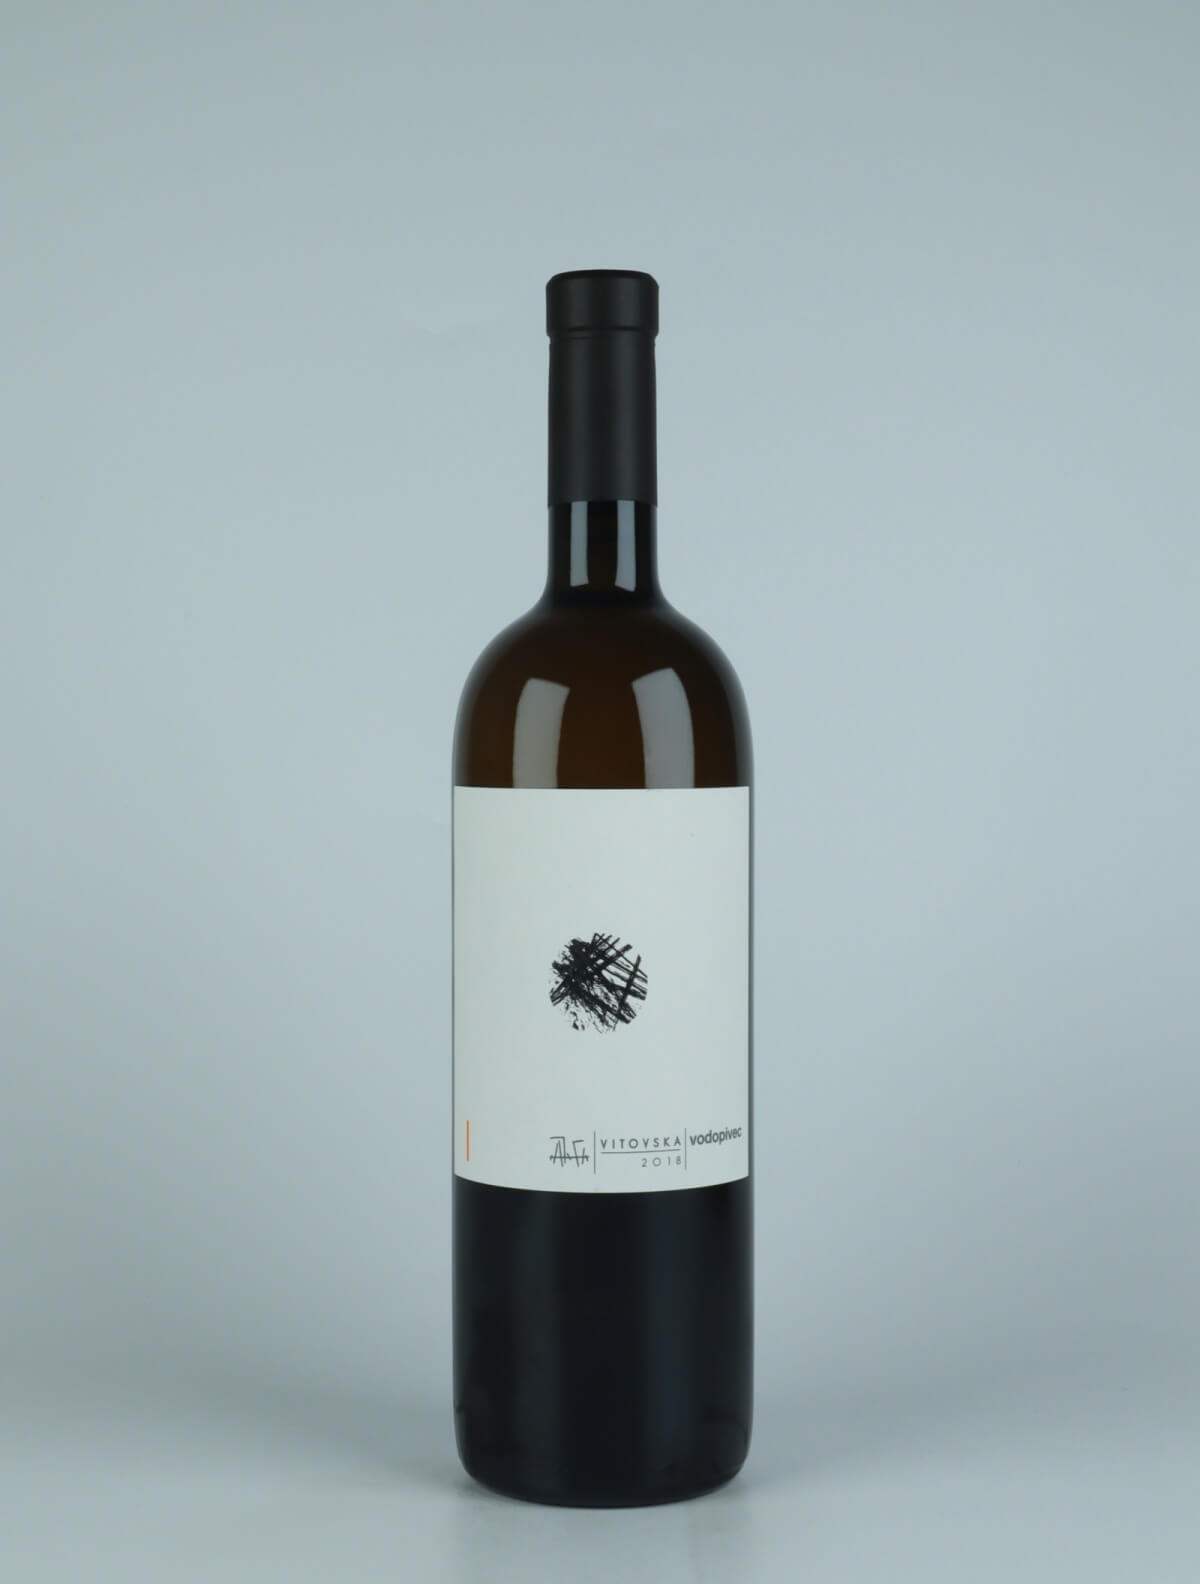 A bottle 2018 Vitovska Orange wine from Paolo Vodopivec, Friuli in Italy